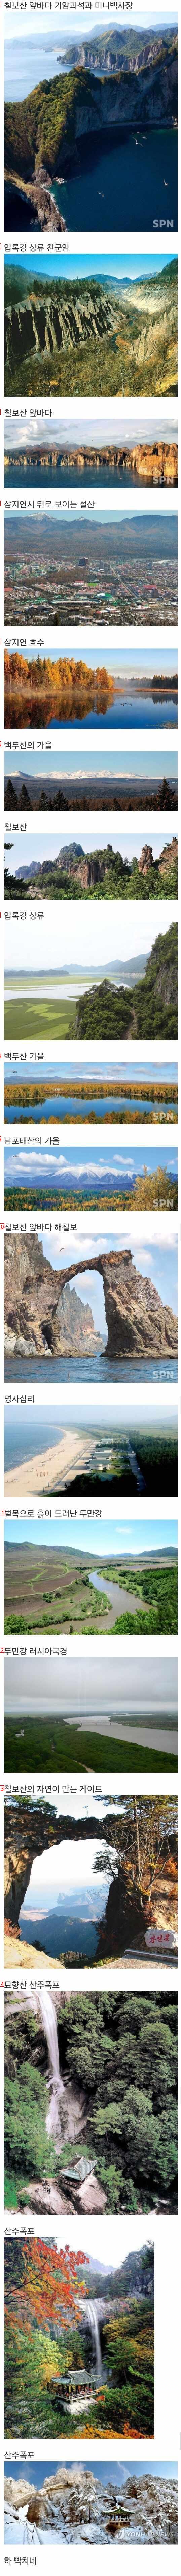 북한이 낭비하고 있는 풍경들